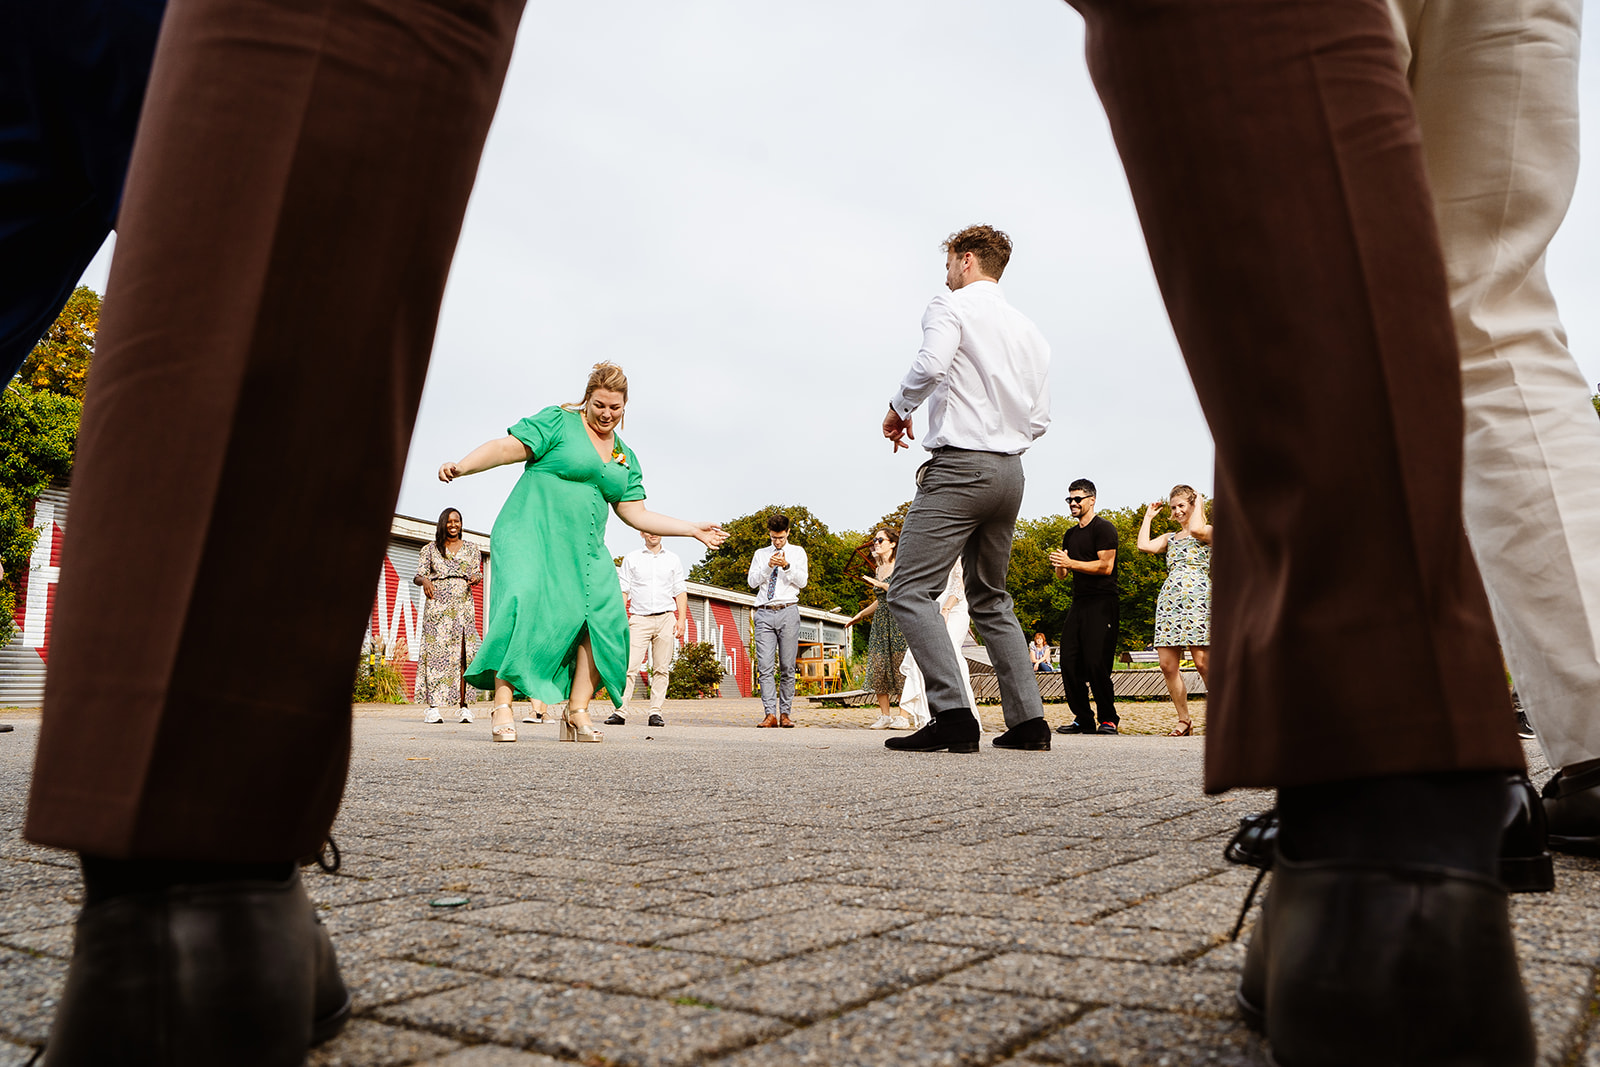 Bruidsfotograaf Maastricht - Een dansworkshop tijdens de receptie van de bruiloft